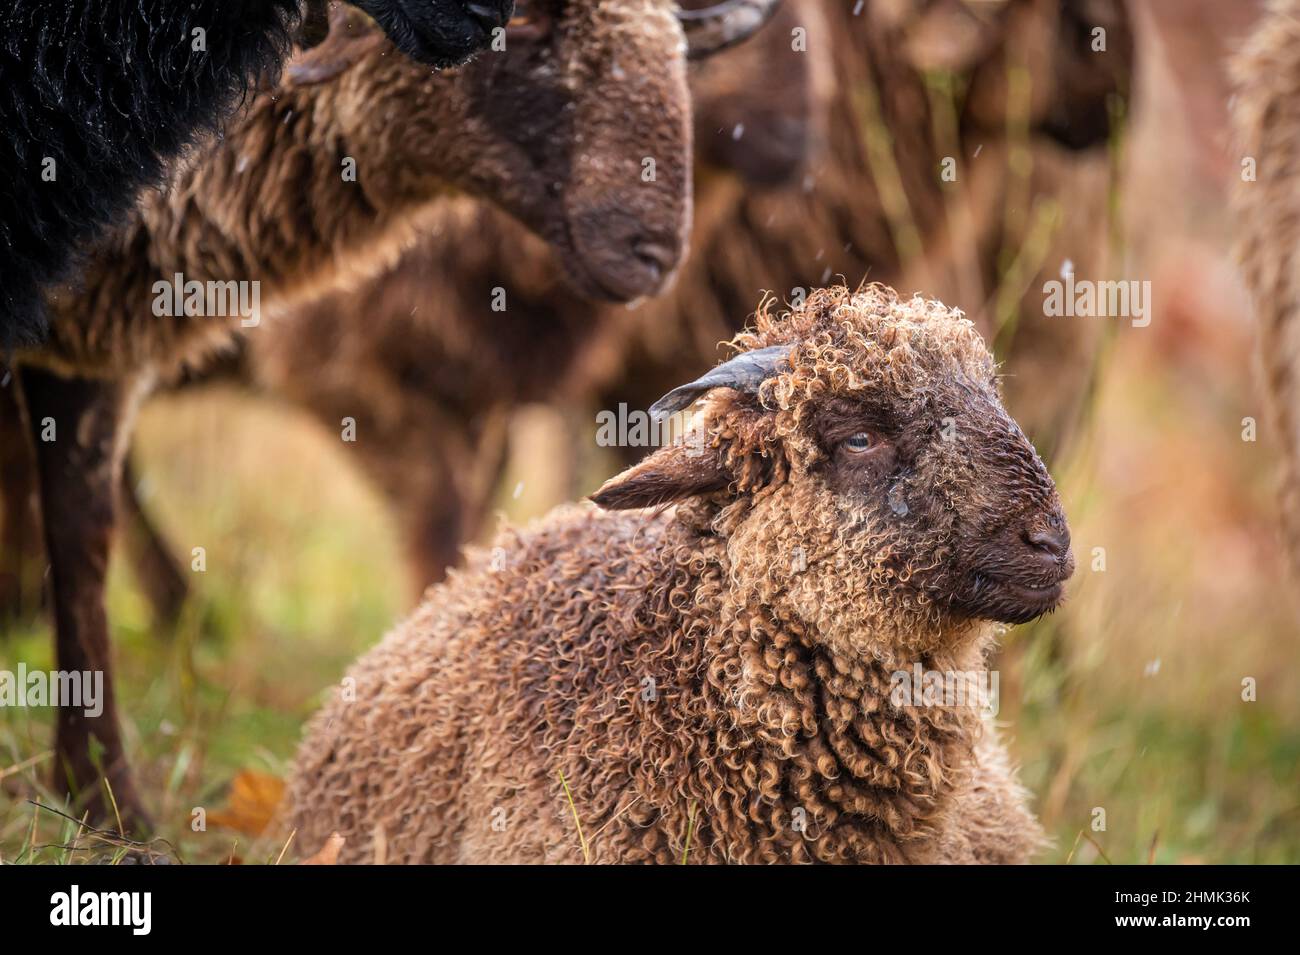 Ritratto di agnello svizzero. Una pelliccia riccio orriata di pecore di campagna Wallis. Roux du Vallese. Svizzera. Bestiame. Foto Stock